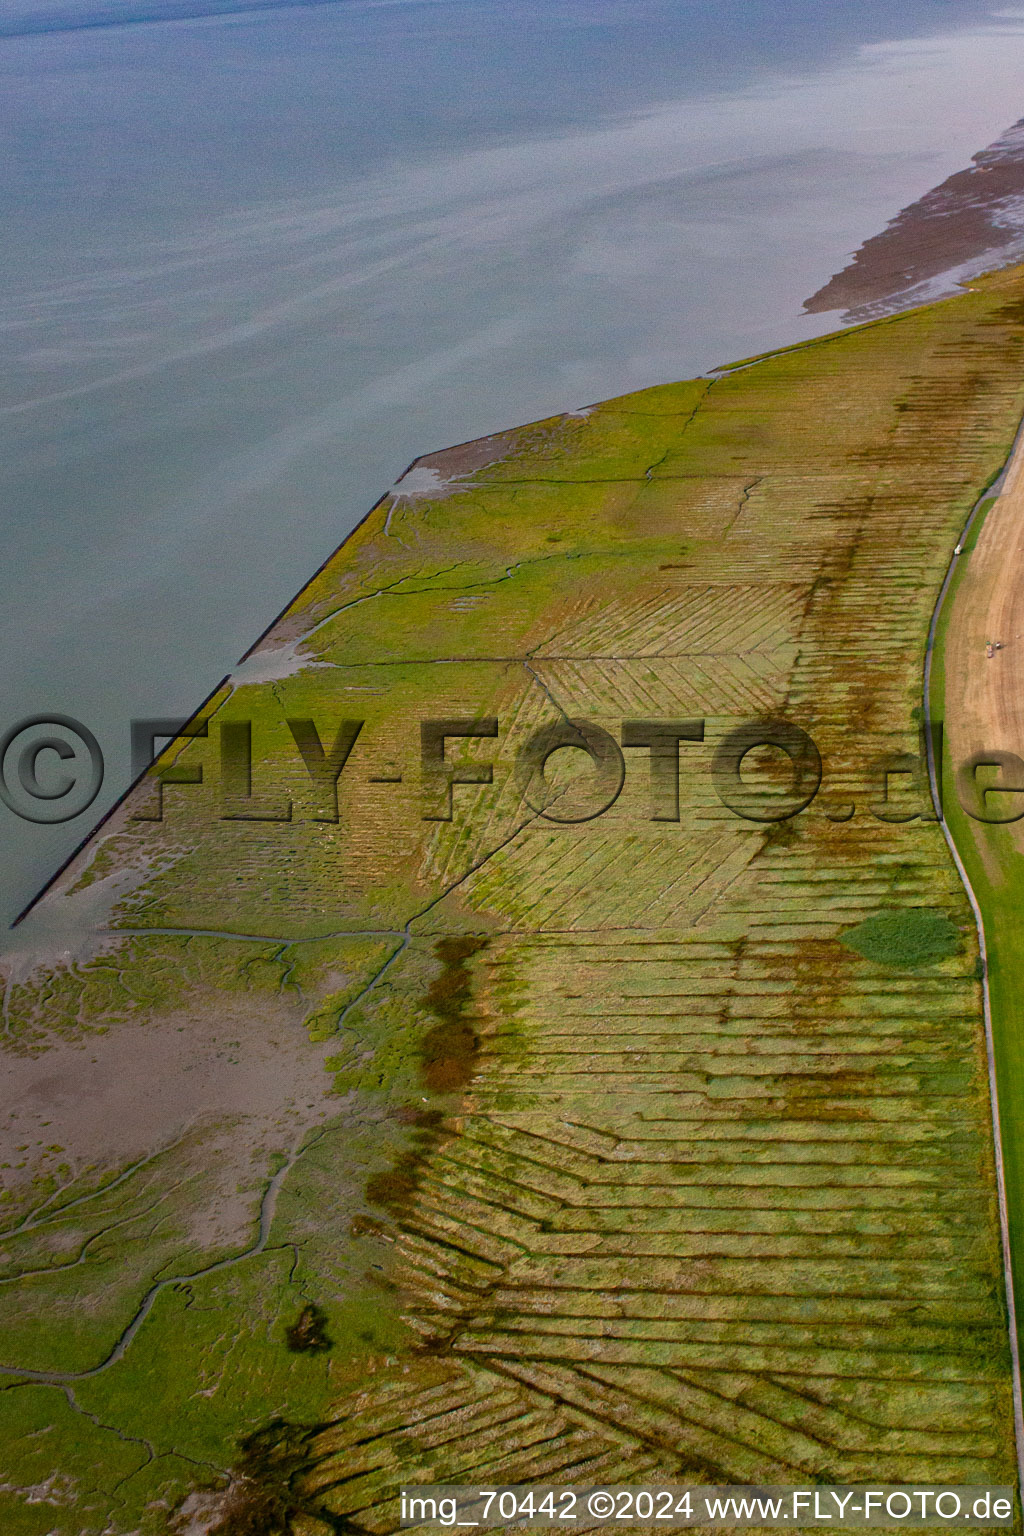 Luftbild von Wattenmeer im Ortsteil Duhnen in Cuxhaven im Bundesland Niedersachsen, Deutschland